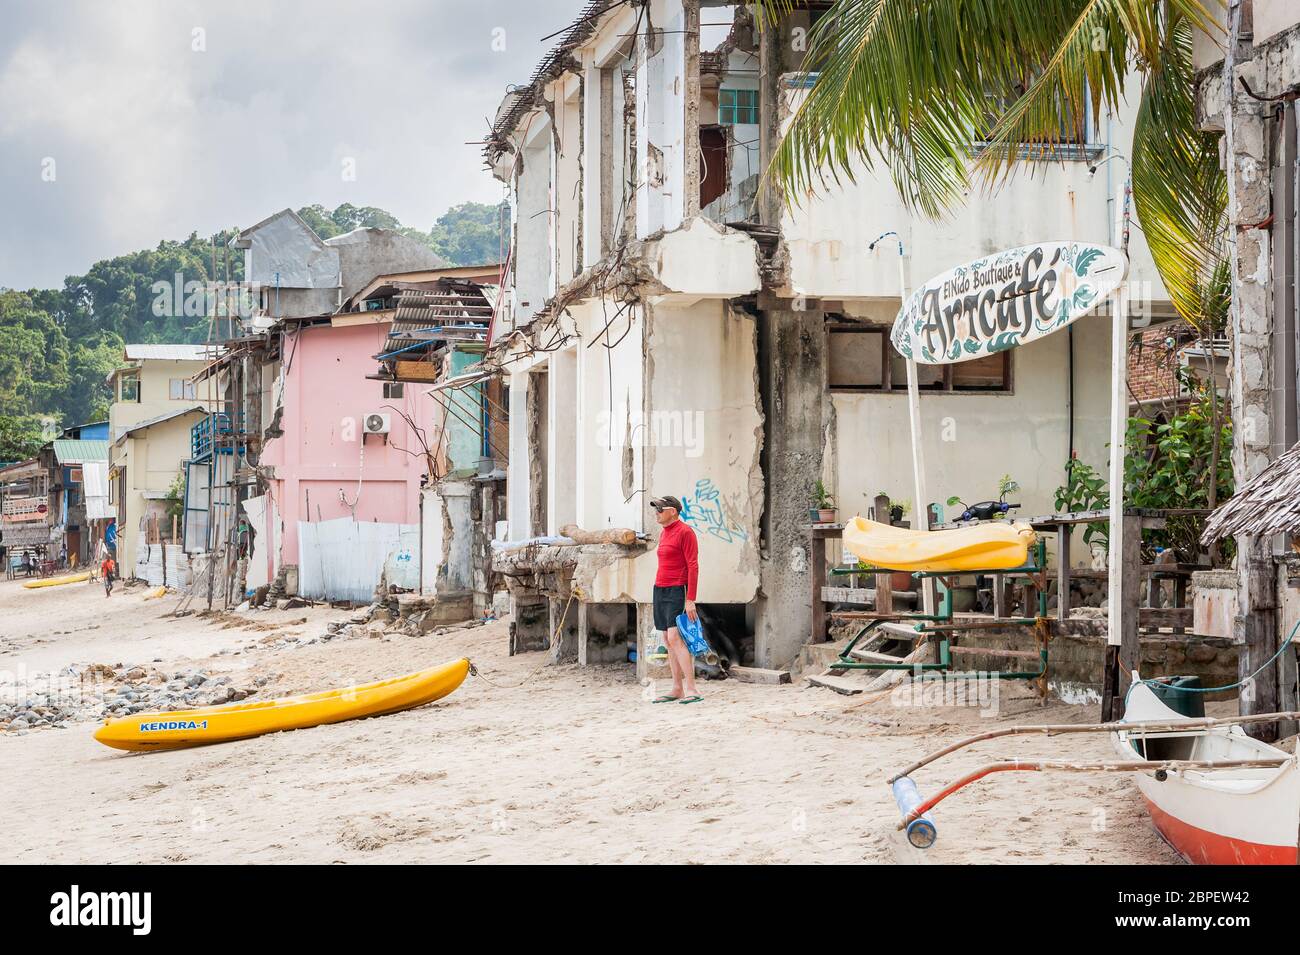 Un touriste occidental se trouve à quelques pas de la plage principale de la ville d'El Nido, Palawan, Philippines. Banque D'Images